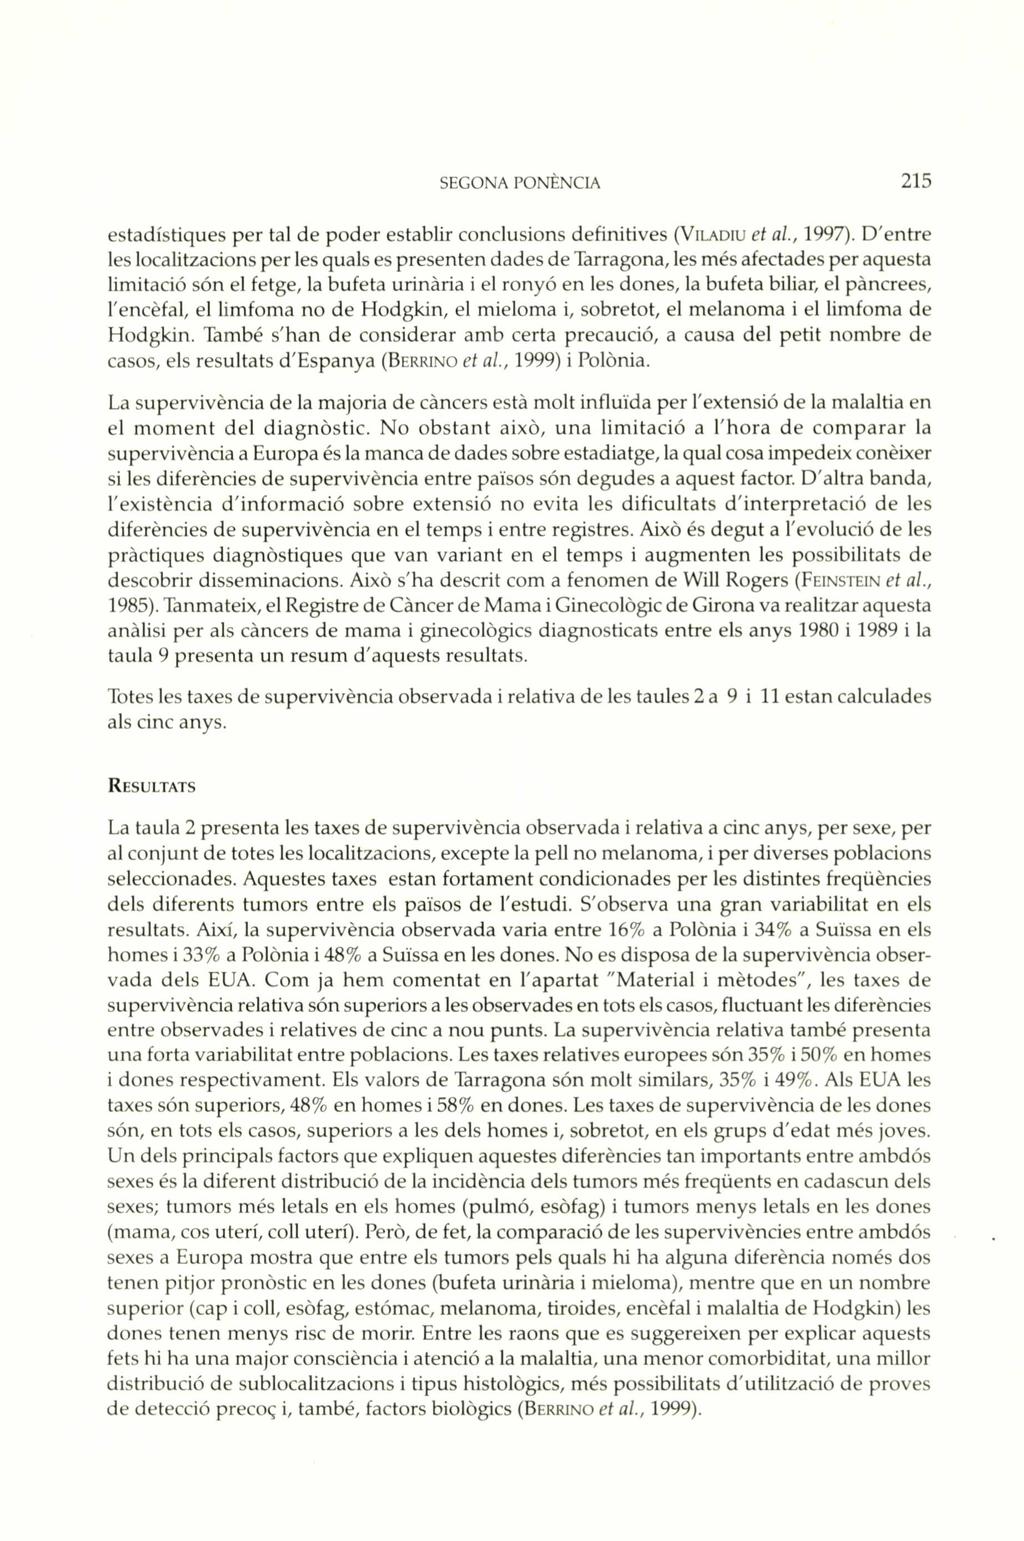 SEGONA PONENCIA 215 estadistiques per tai de poder establir conclusions definitives (VILADIU et al., 1997).